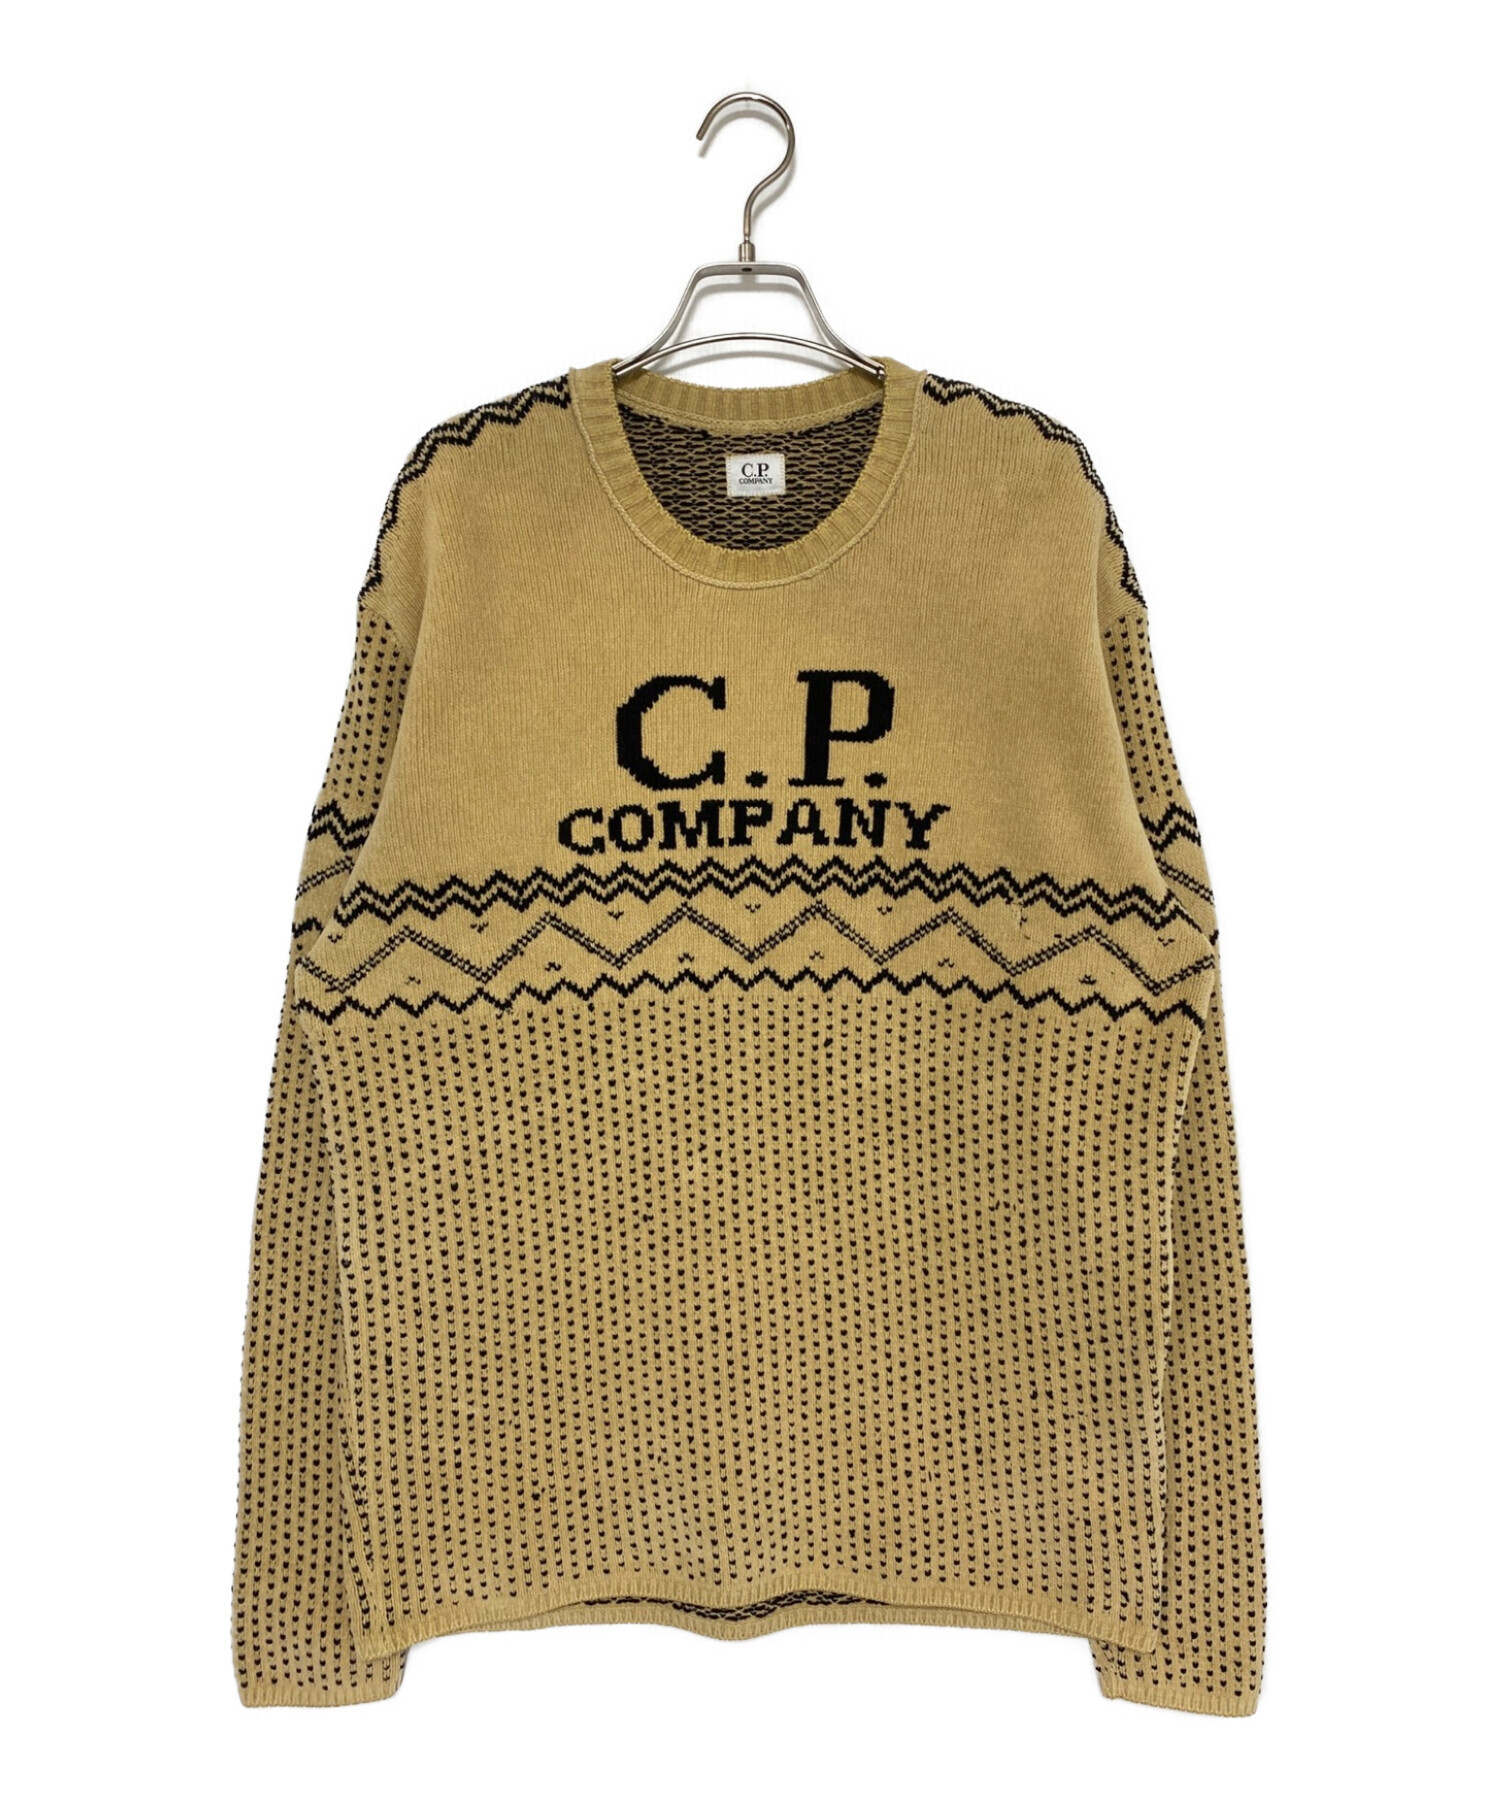 C.P COMPANY (シーピーカンパニー) クルーネックニット ベージュ サイズ:52